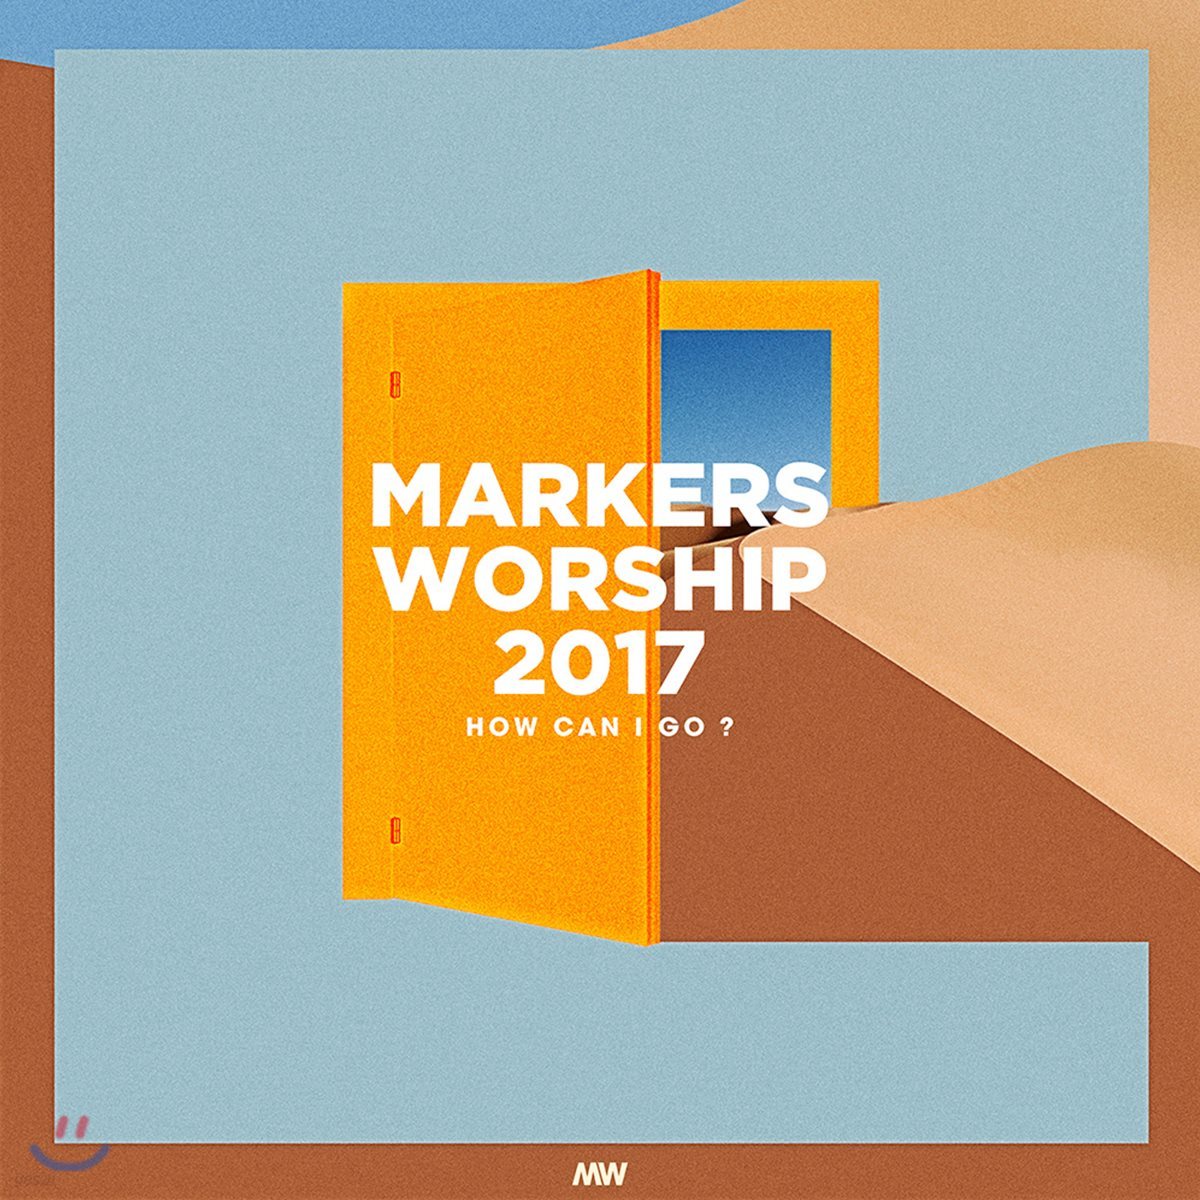 마커스워십 2017 (Markers Worship 2017) - How Can I Go?